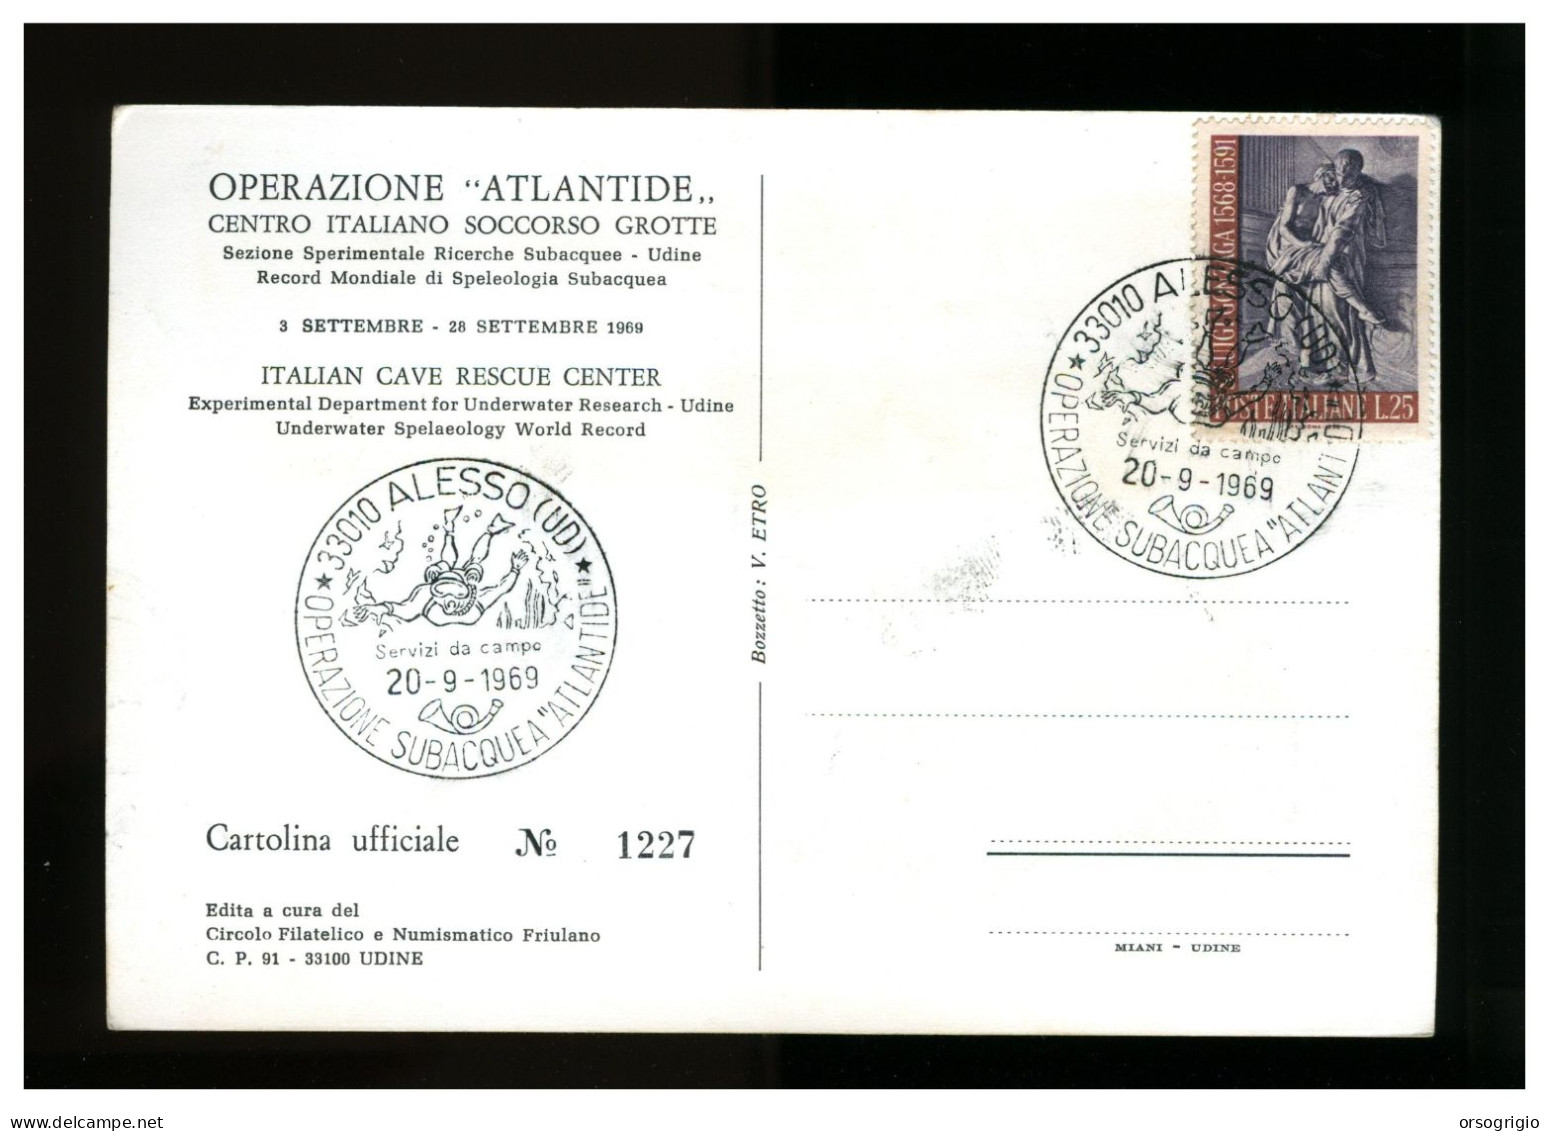 ITALIA - OPERAZIONE ATLANTIDE 1969 - CAVE RESCUE - ALESSO - Città Subacquea - Diving